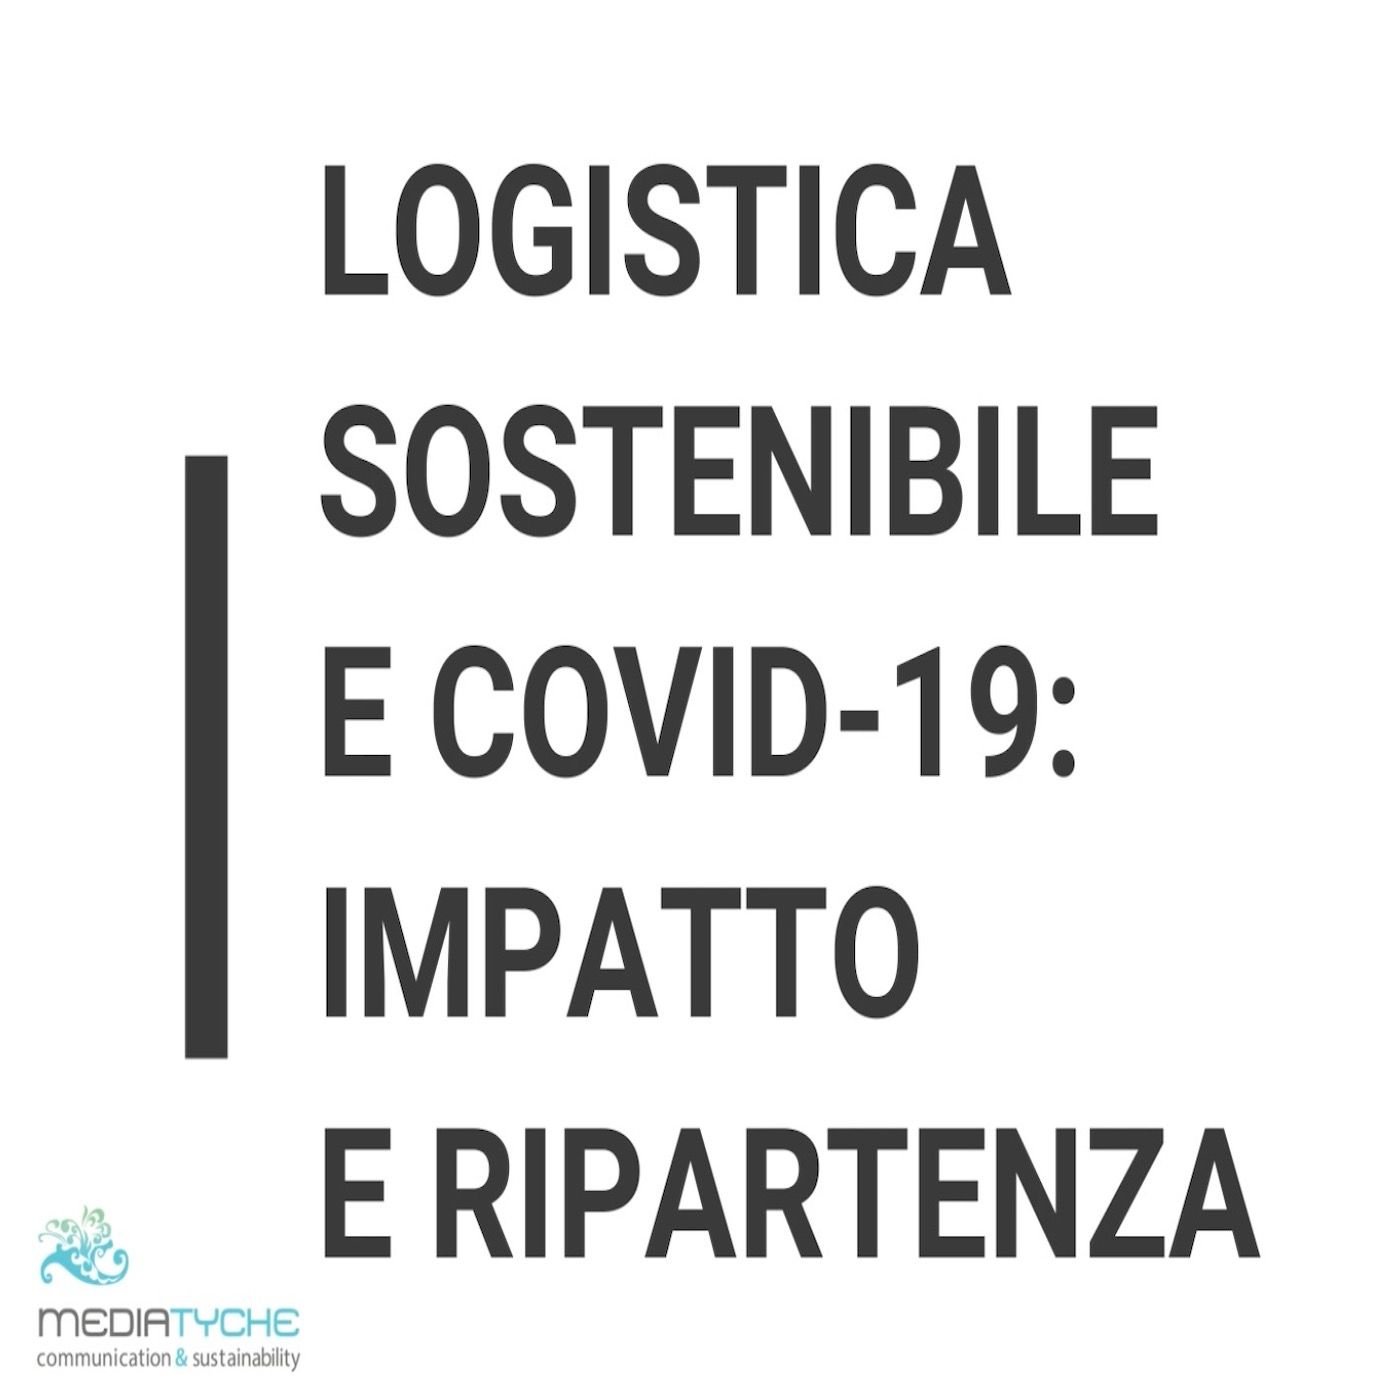 4 - Logistica sostenibile e Covid-19: impatto e ripartenza